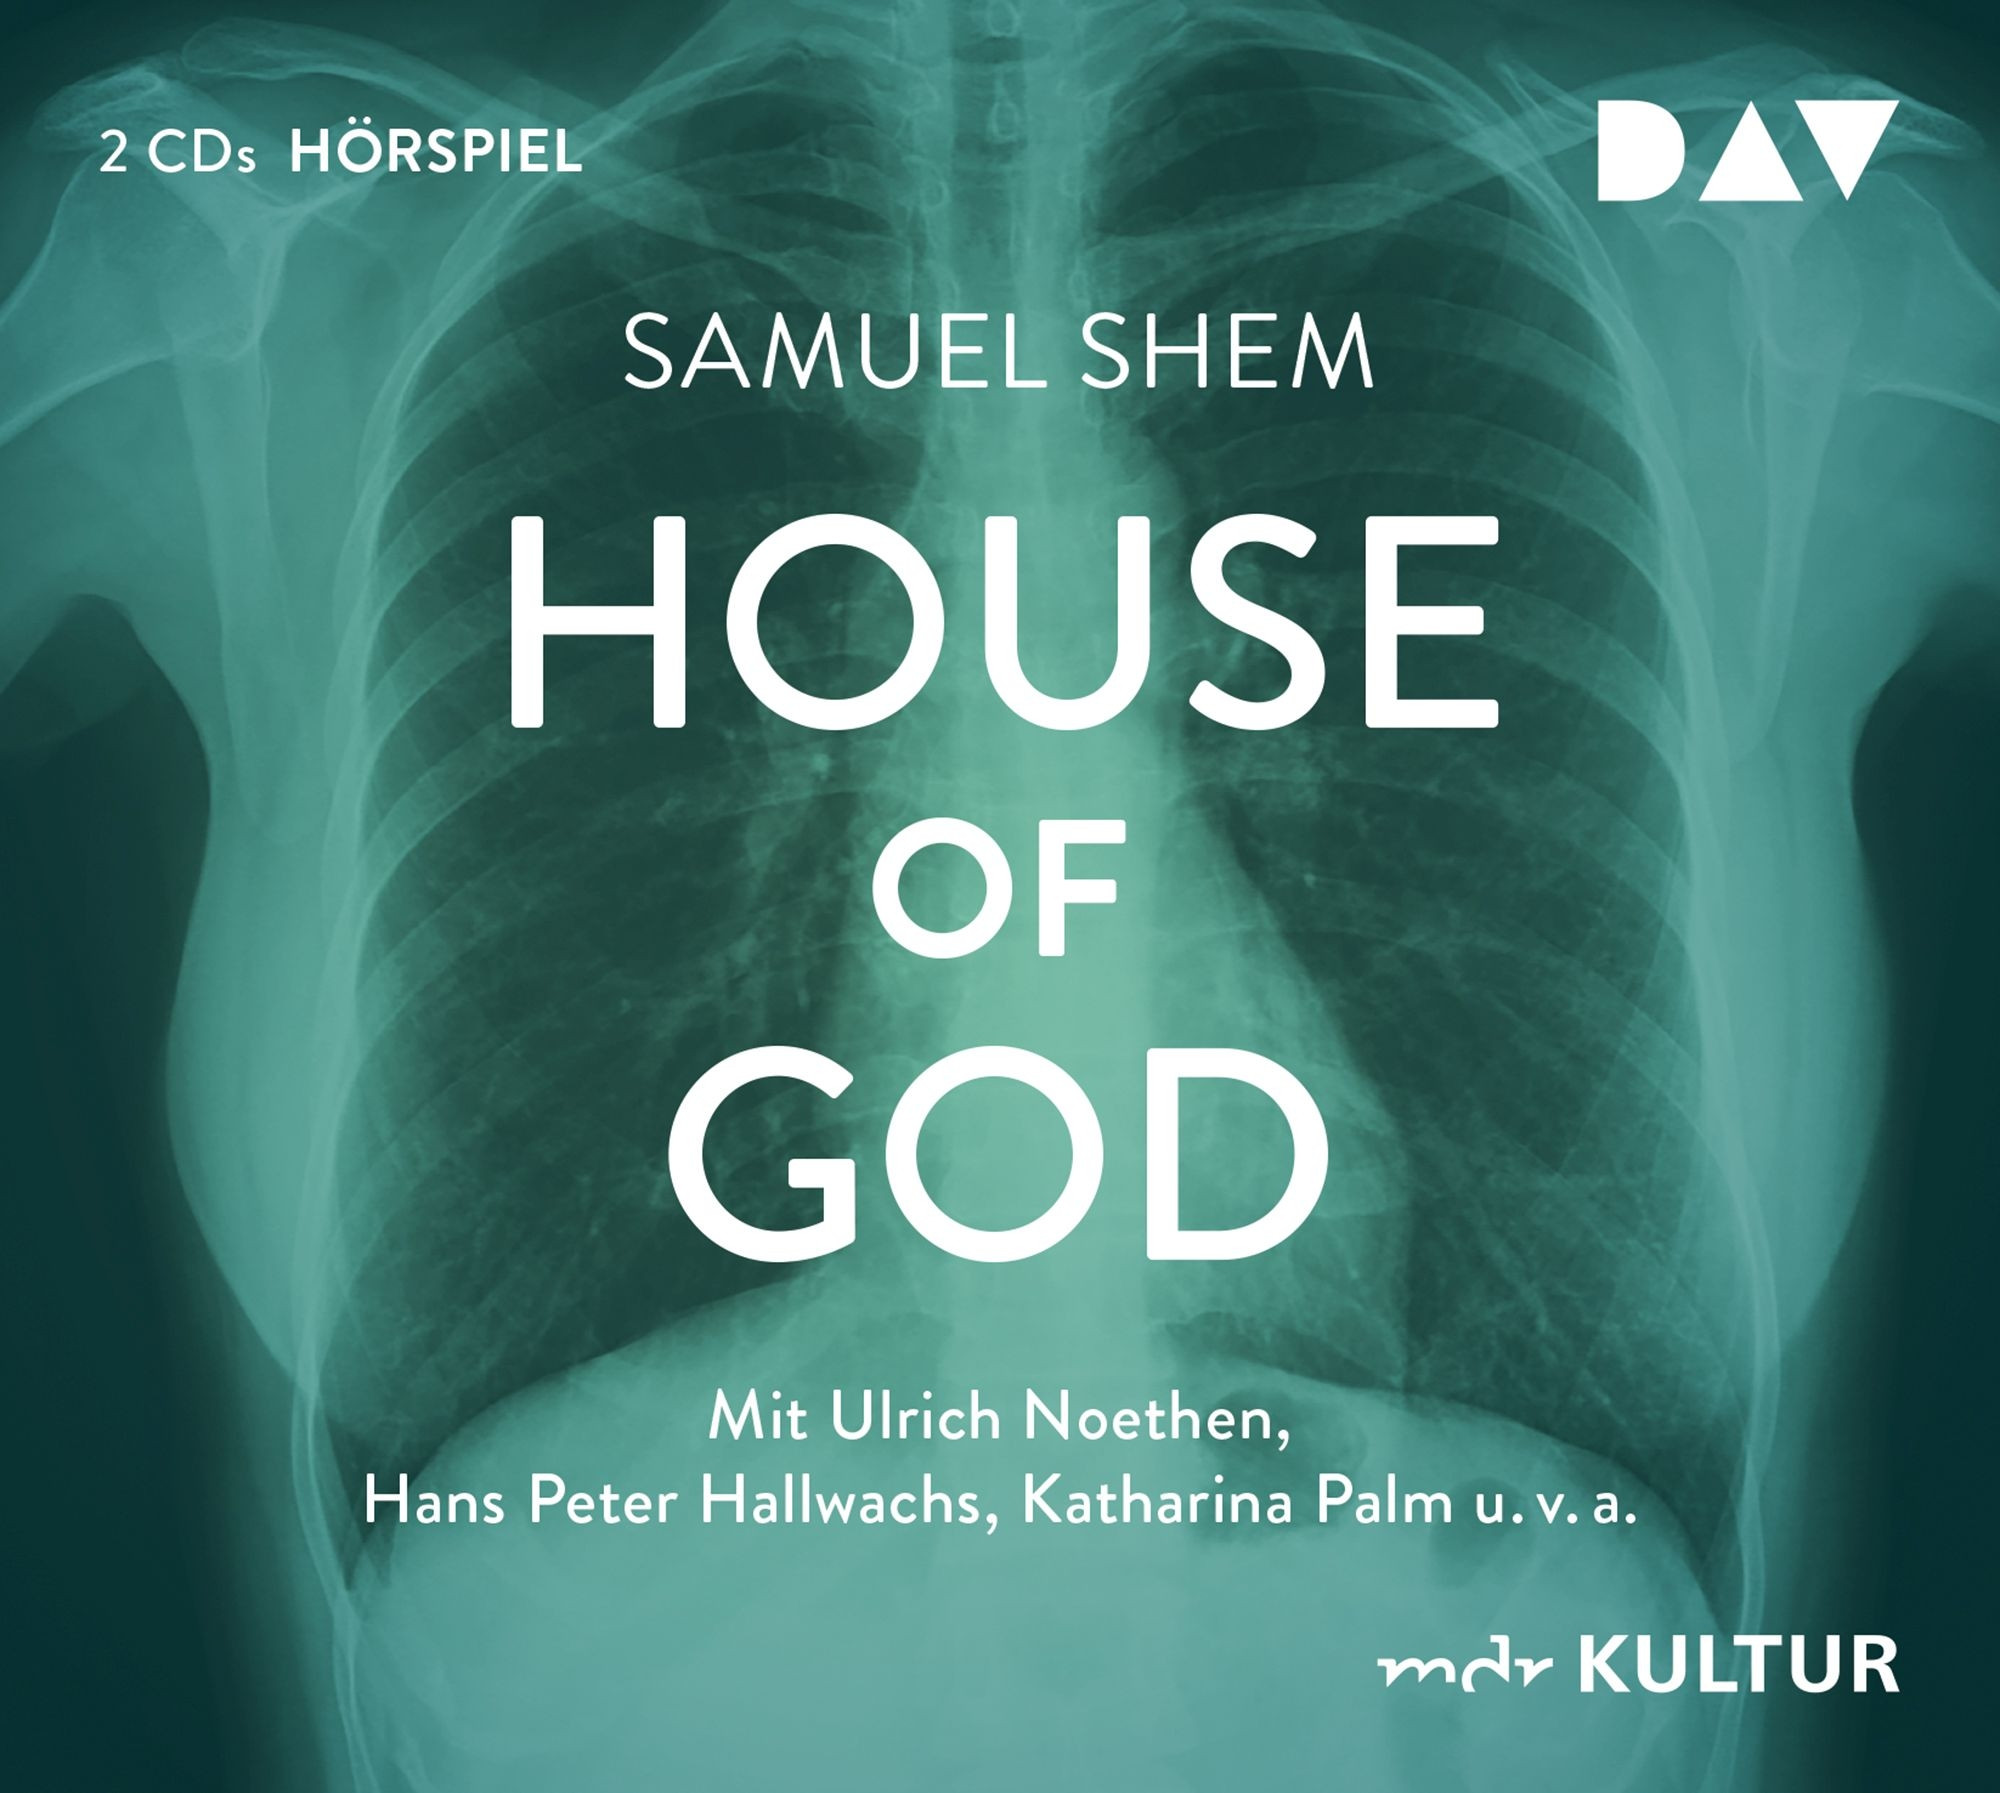 Samuel Shem - House of God (Hörspiel)